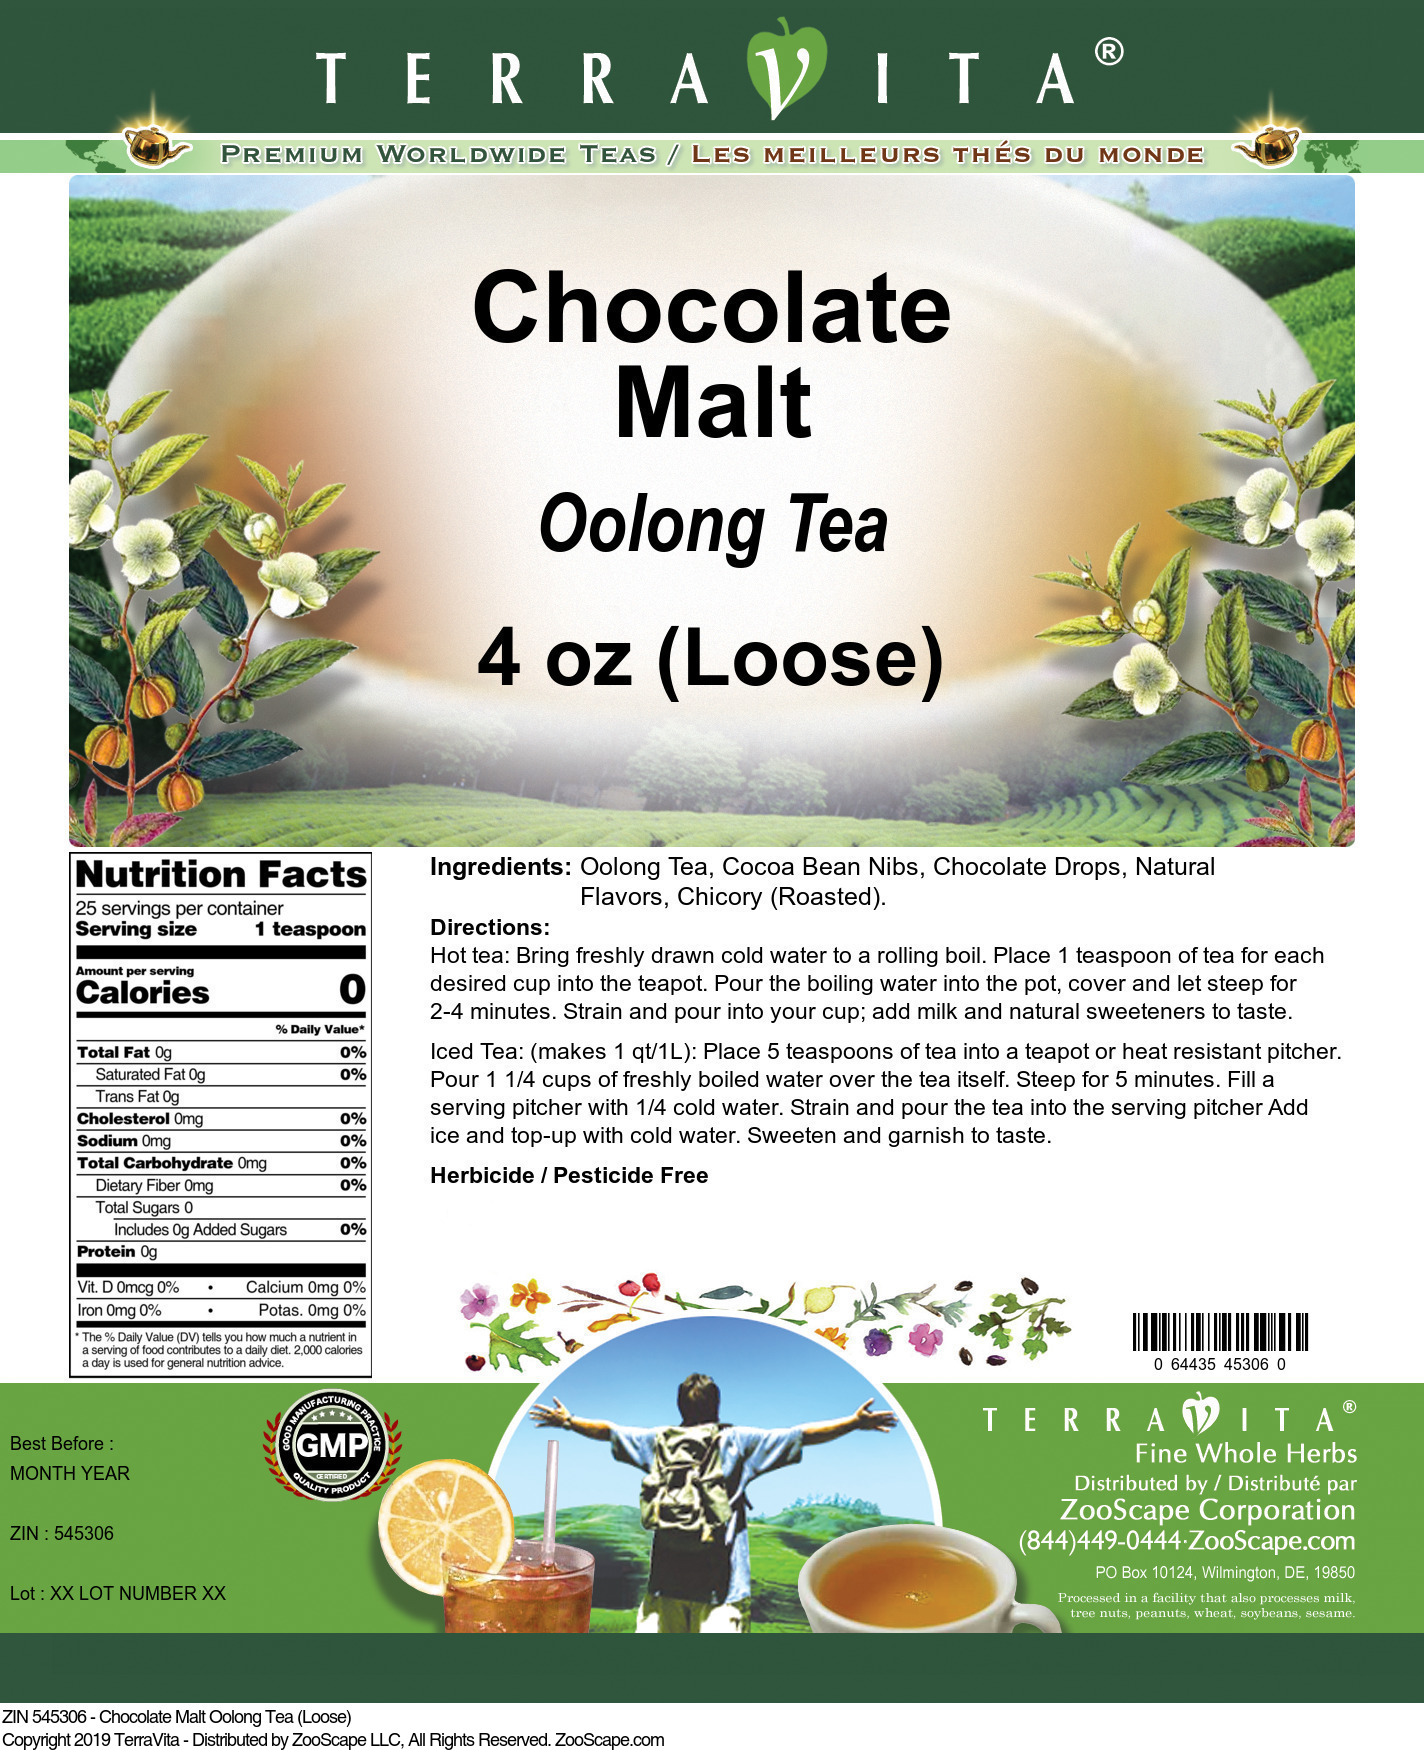 Chocolate Malt Oolong Tea (Loose) - Label